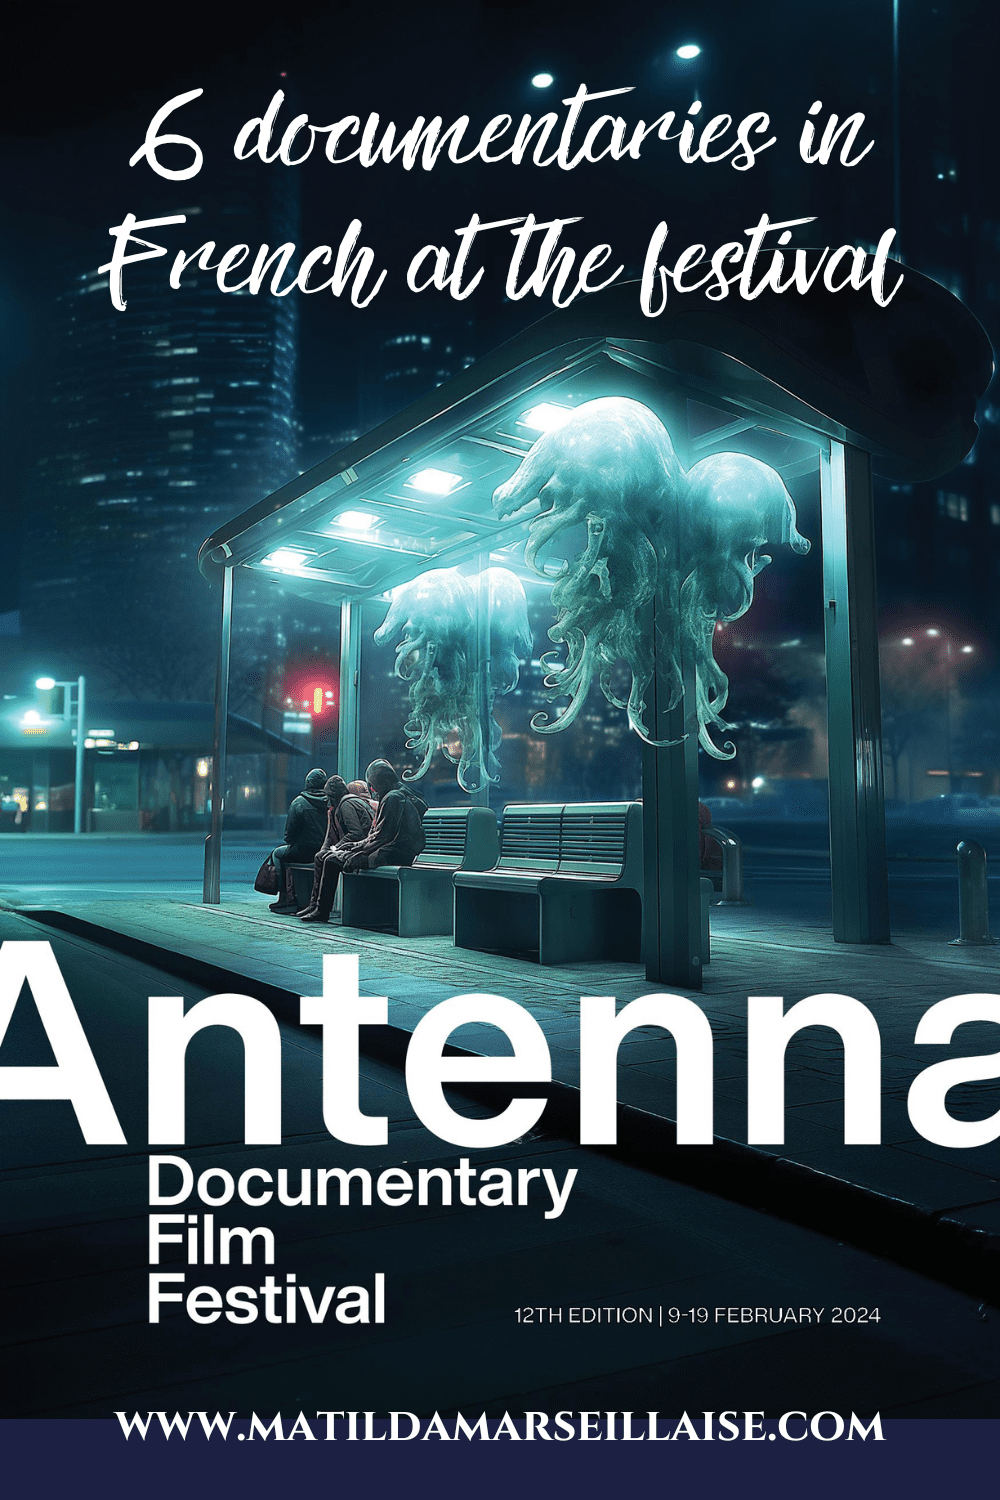 Antenna Documentary Film Festival 2024